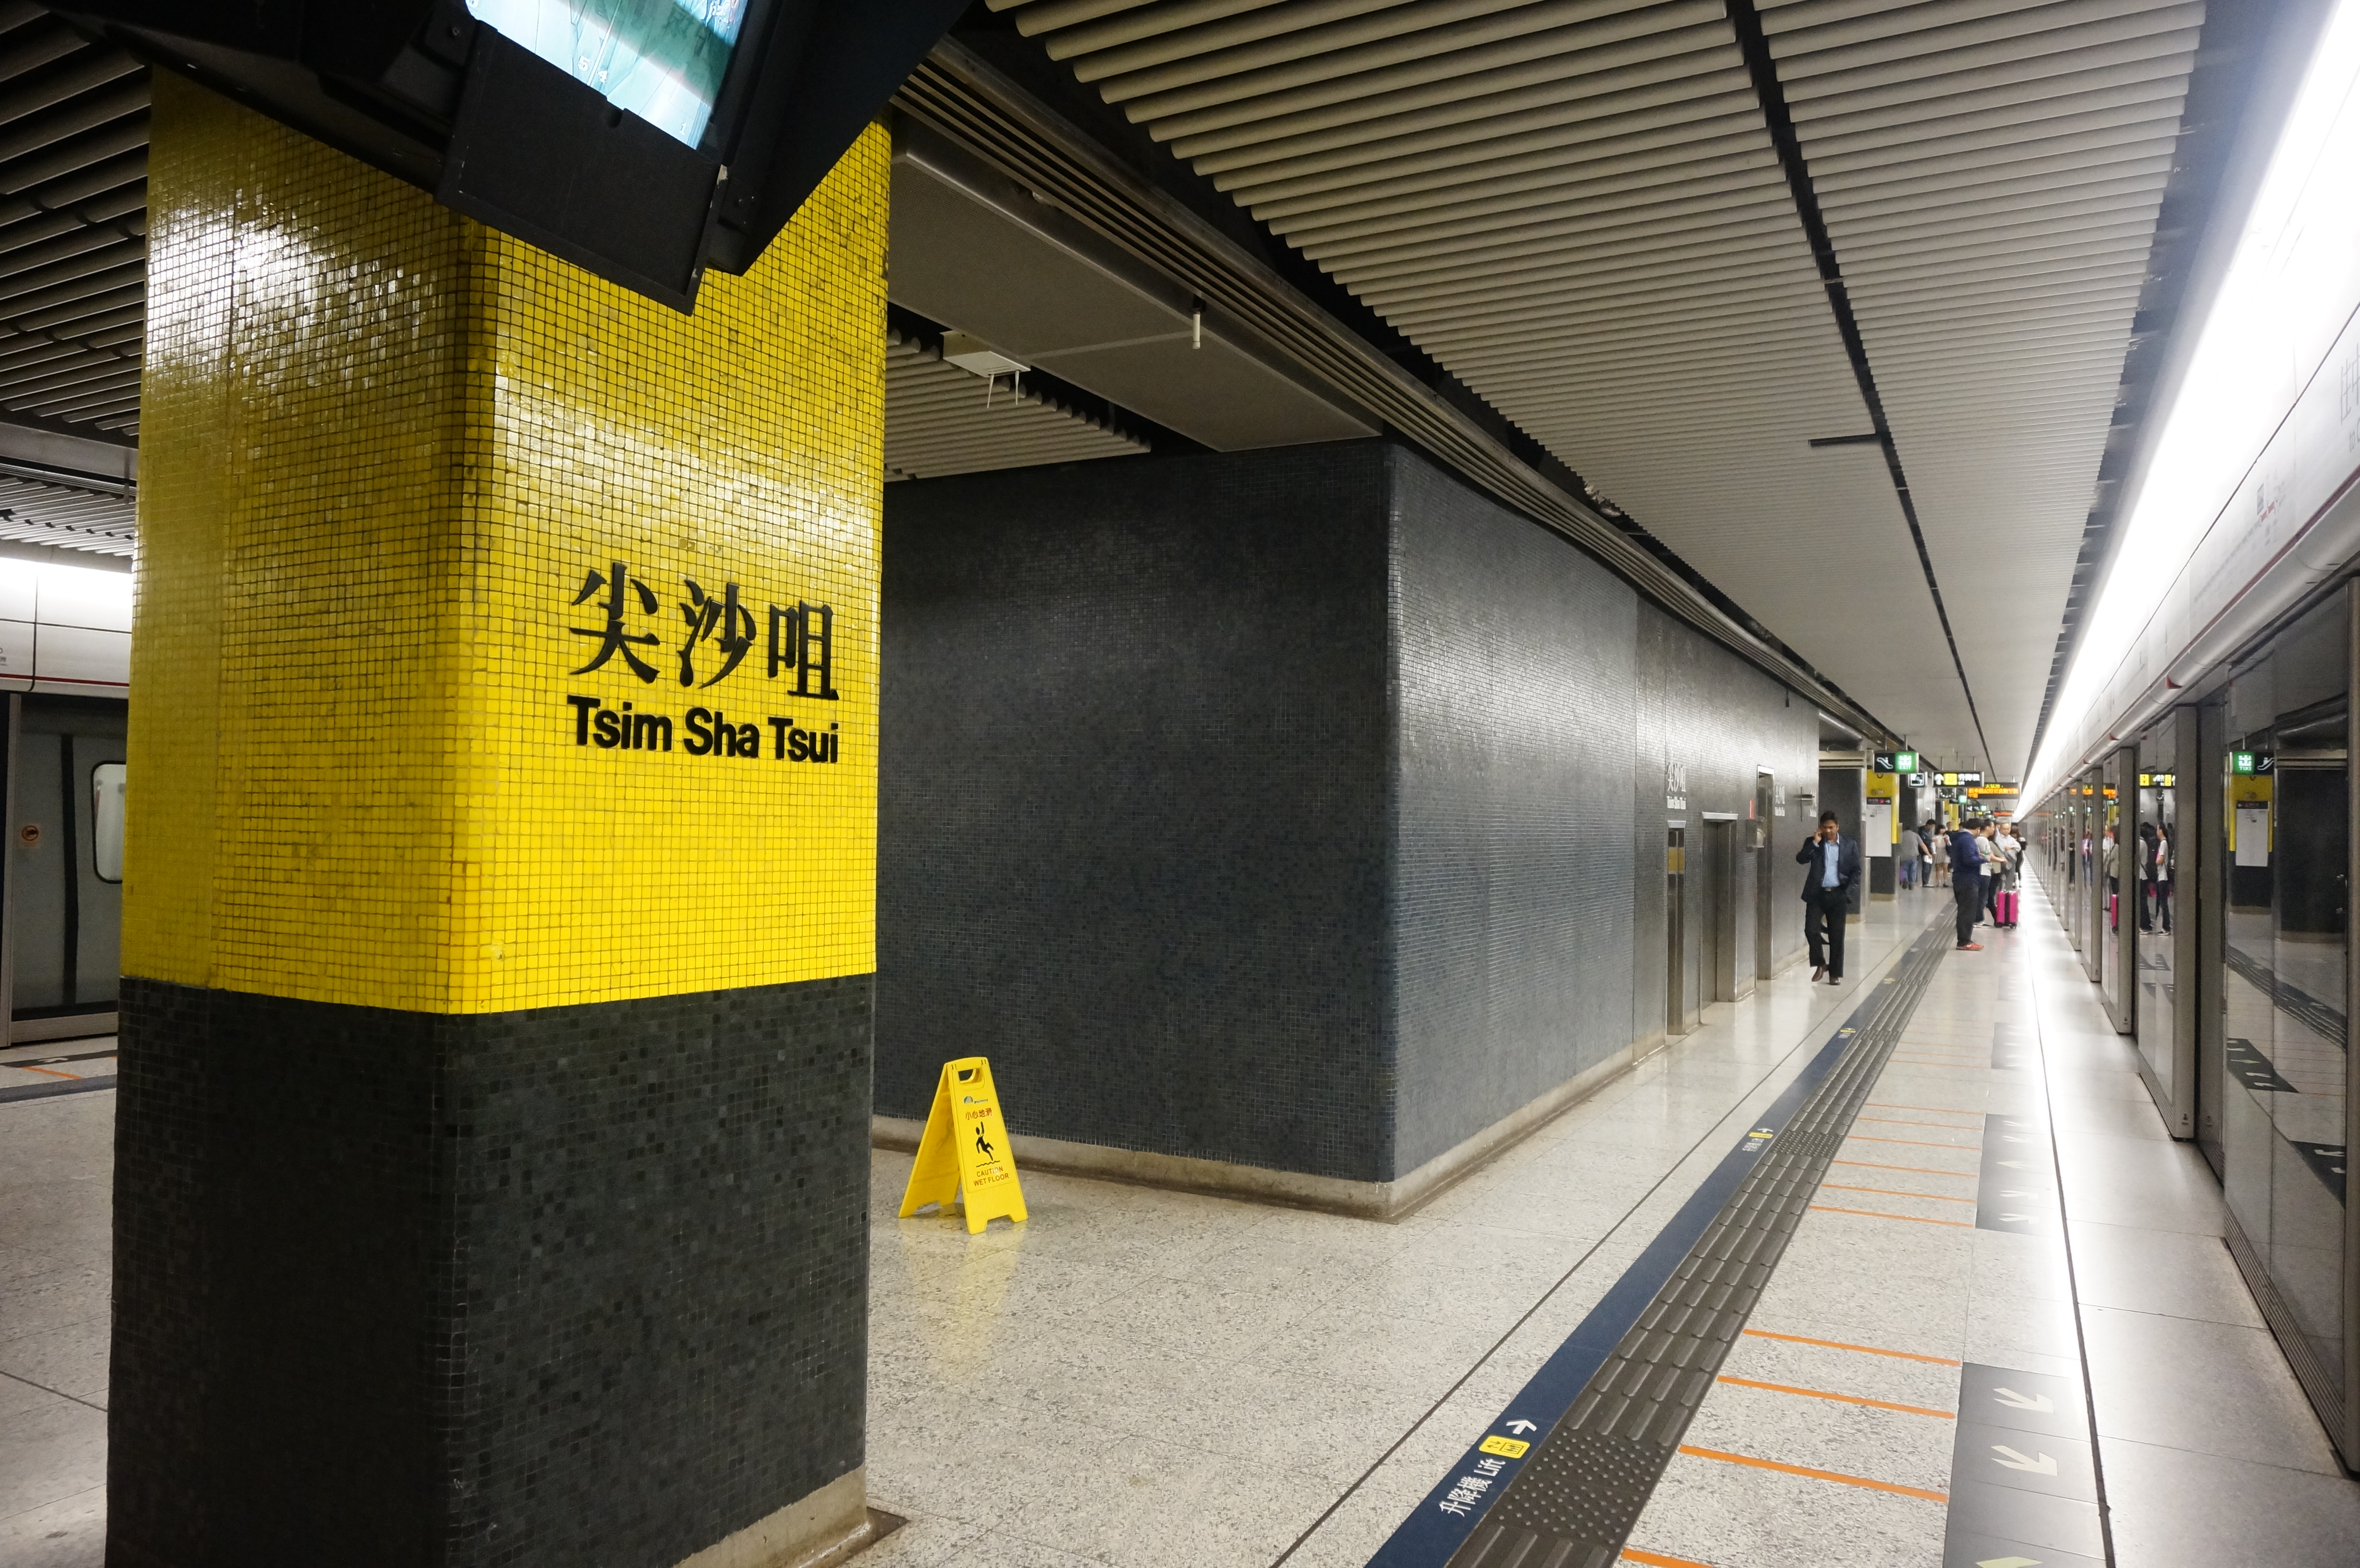 Tsim Sha Tsui station